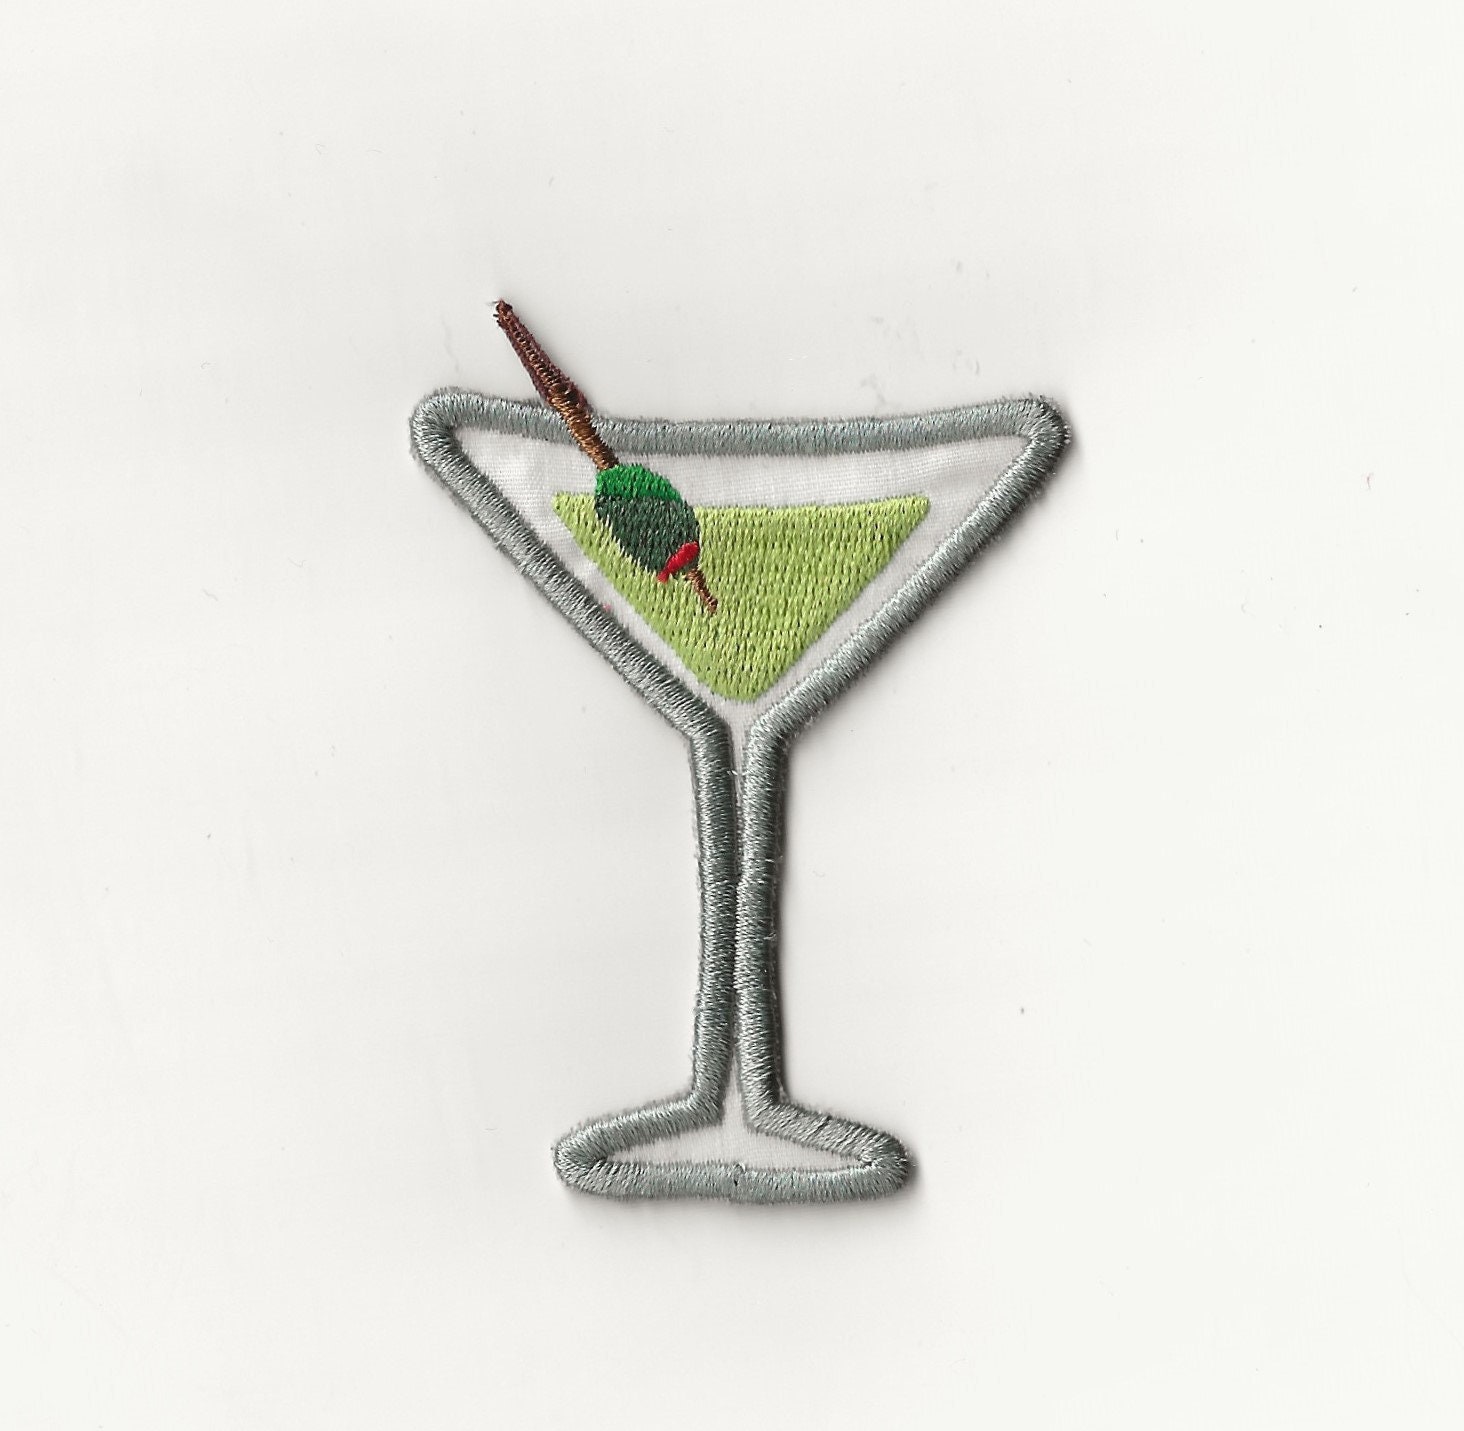 Paper Martini Glass 